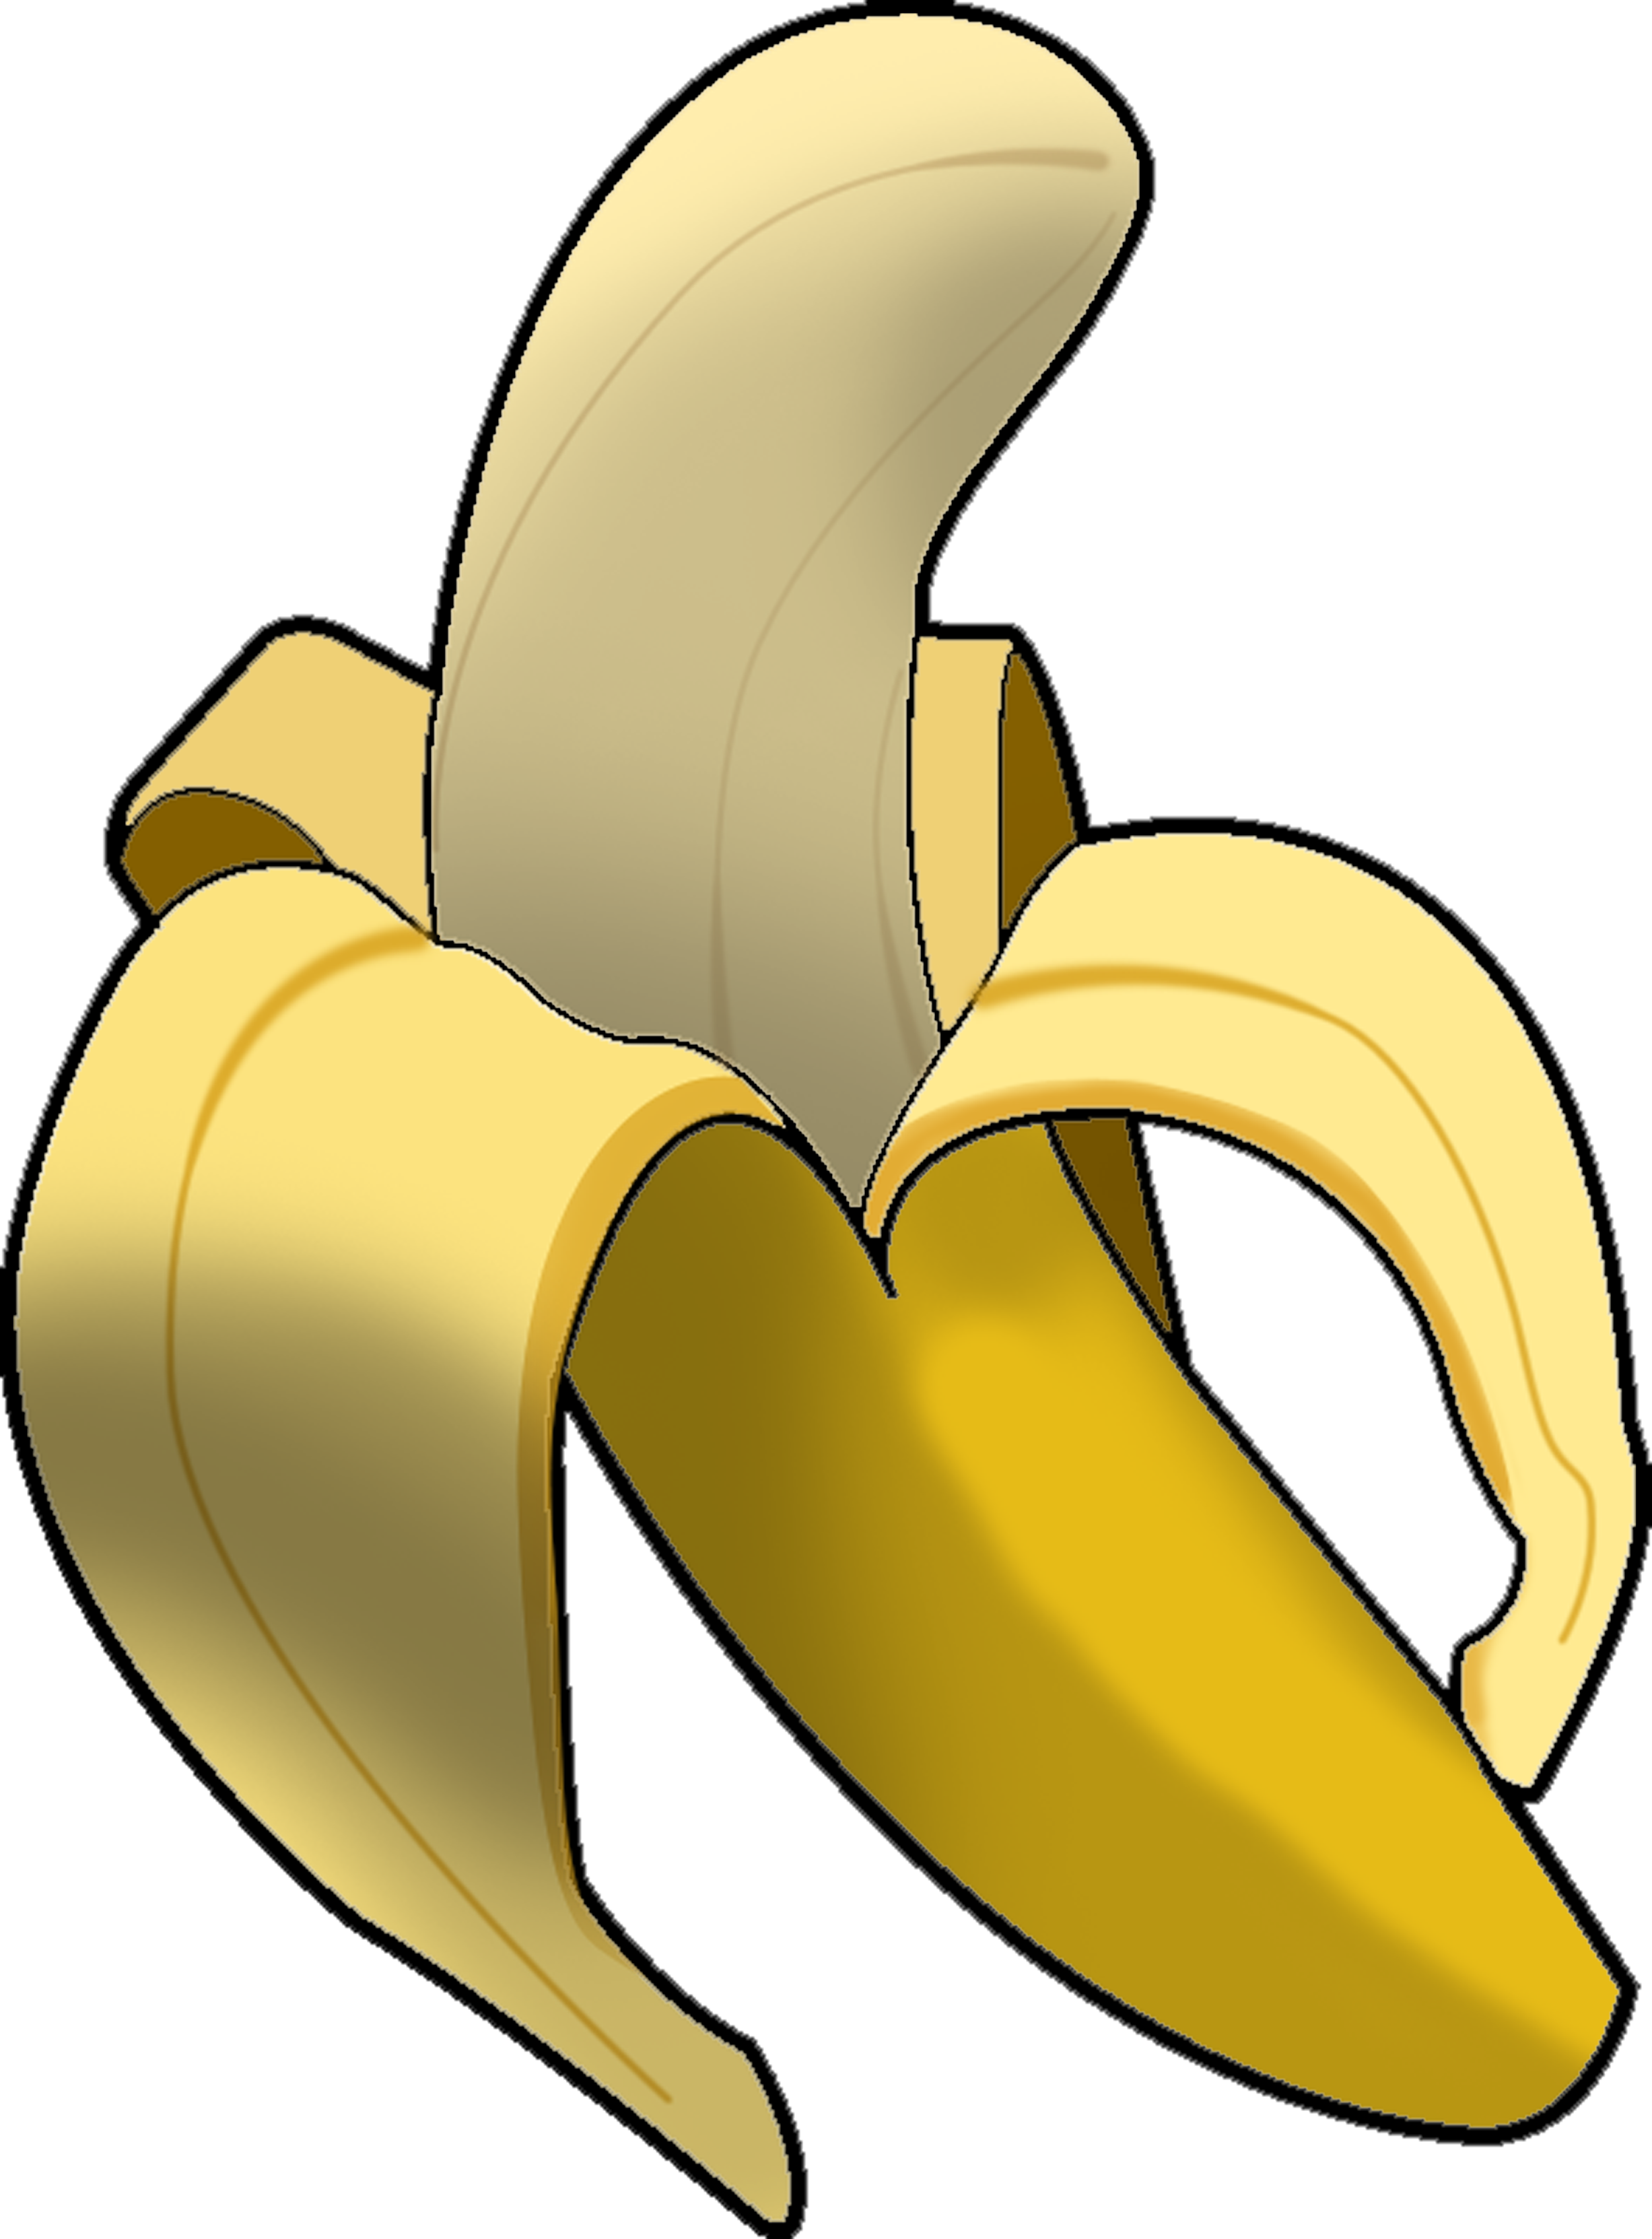 Free clip art banana 